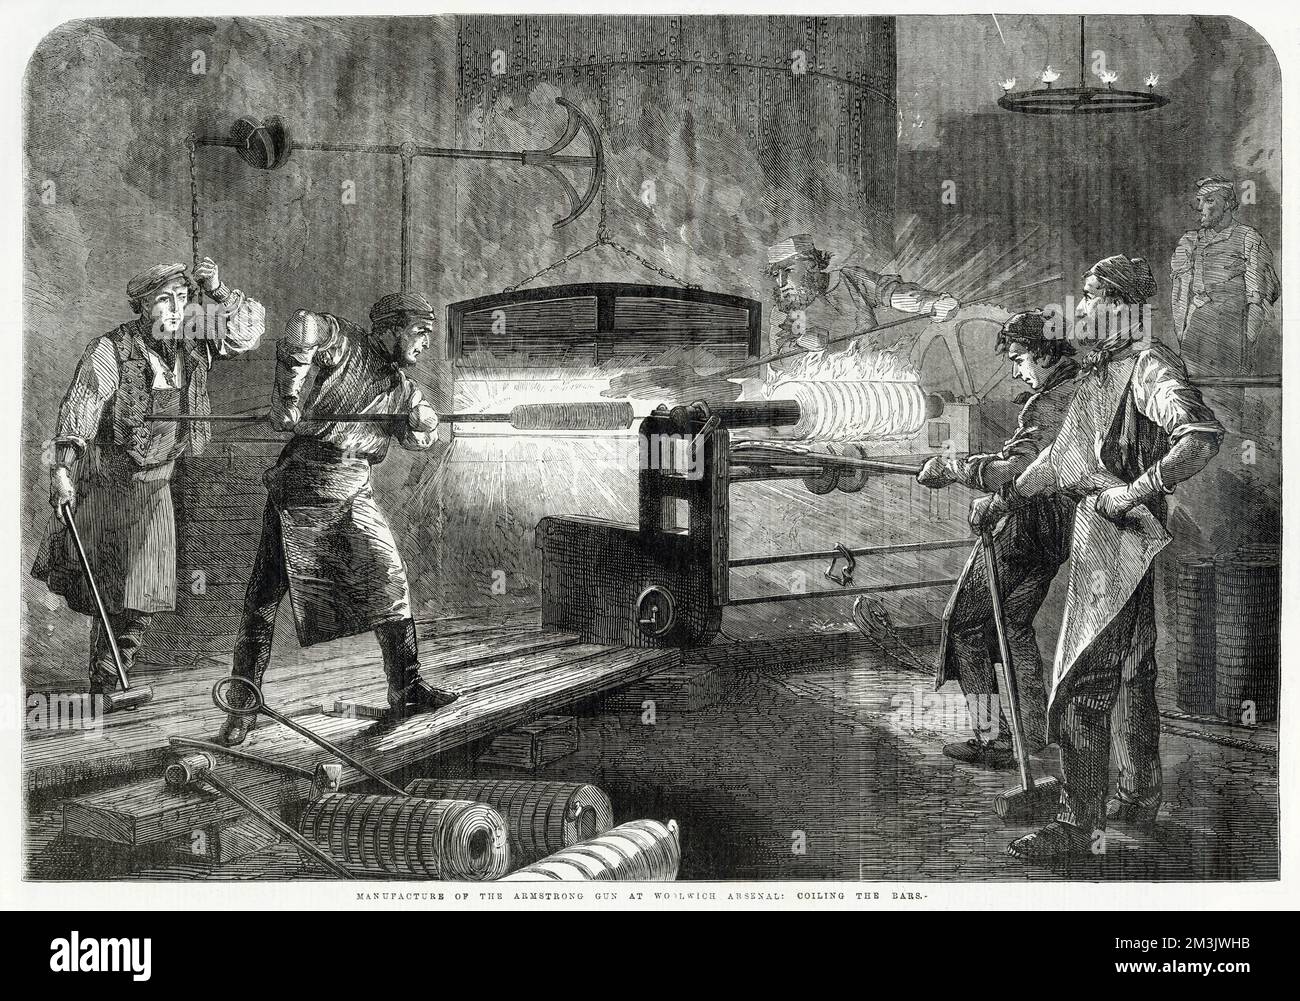 Szene in Woolwich Arsenal, London, zeigt, wie eine armstrong-Waffe hergestellt wird. Diese Pistole wurde 1859 in die britische Armee eingeführt und war eine der ersten praktischen Beinbruch-Feldgewehre der modernen Ära. Die Waffe könnte Granatsplitter, Fallschuss oder eine explosive 11,56lb abfeuern. Und wurde als sehr genau betrachtet. Woolwich, das sich in der Nähe der Royal Dockyard befindet, wurde zum ersten Mal Ende des 17. Jahrhunderts von einem Lagerdepot zu einer Munitionsfabrik umgebaut. Die Armstrong Rifle Fabrik wurde um 1858 eröffnet. Stockfoto